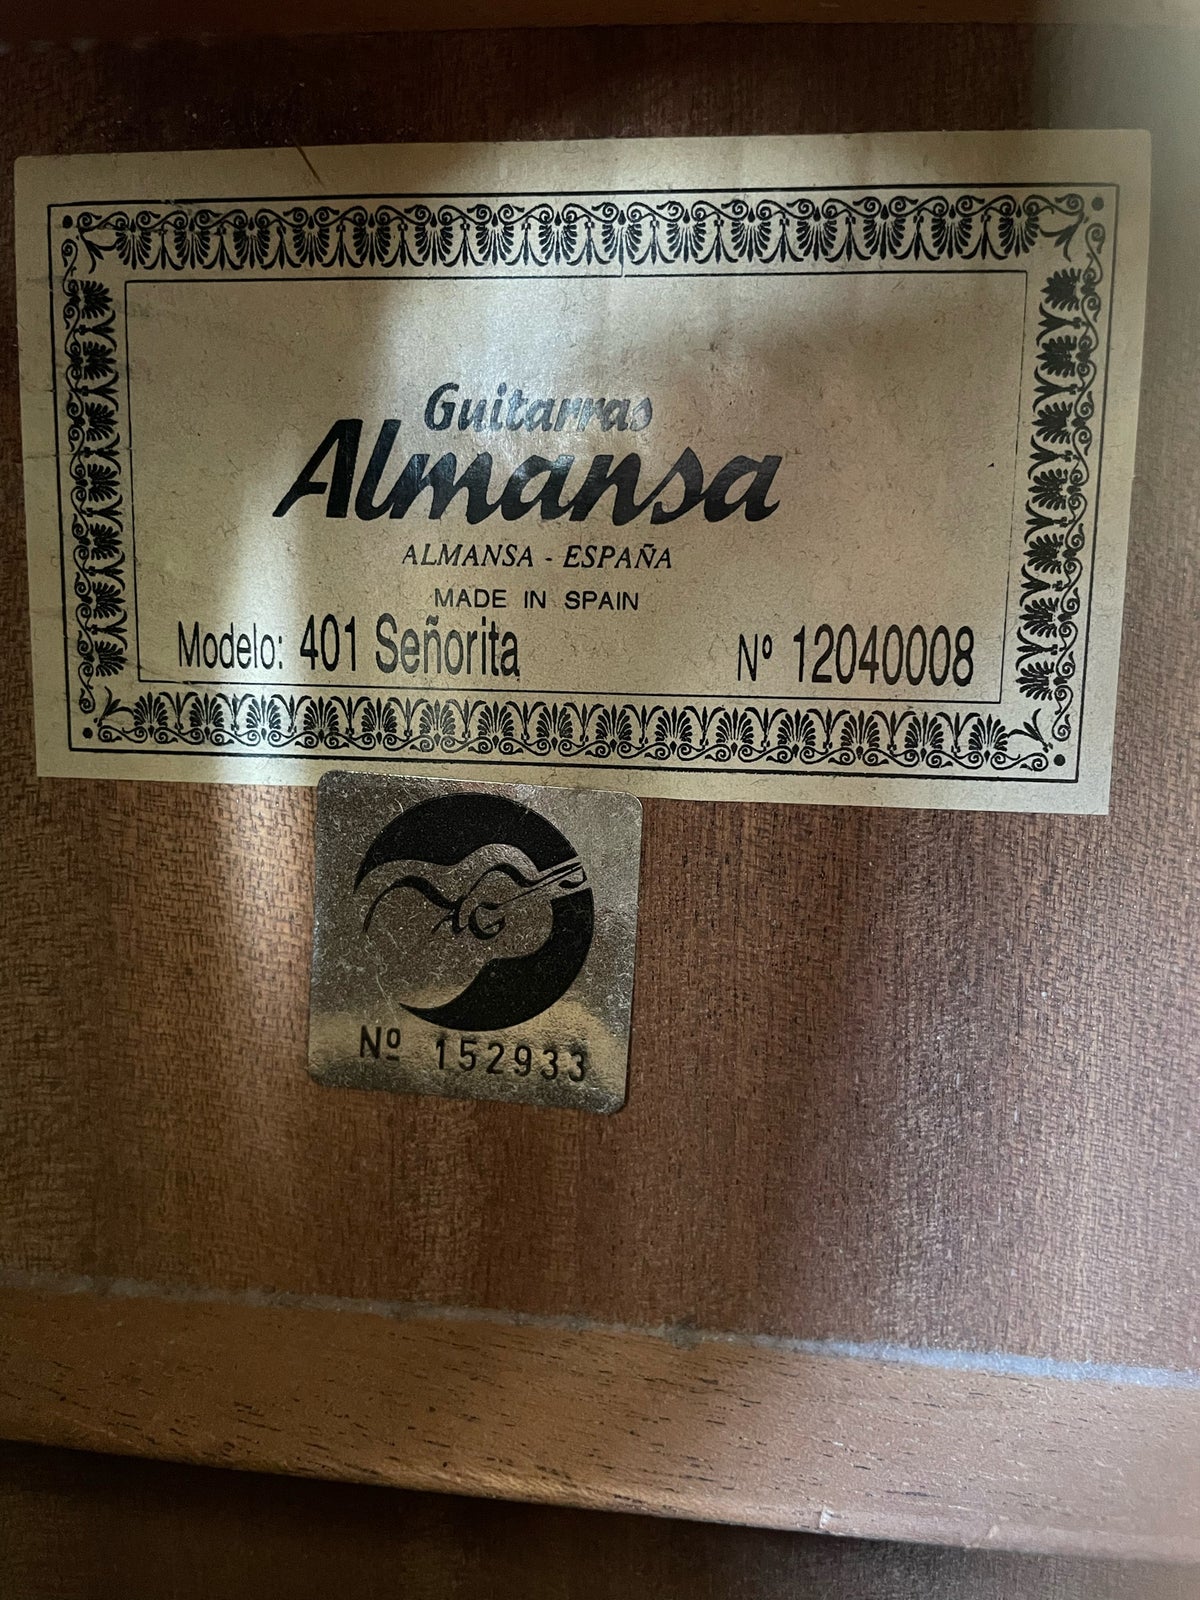 Spansk, Alhambra Almansa 401 7/8